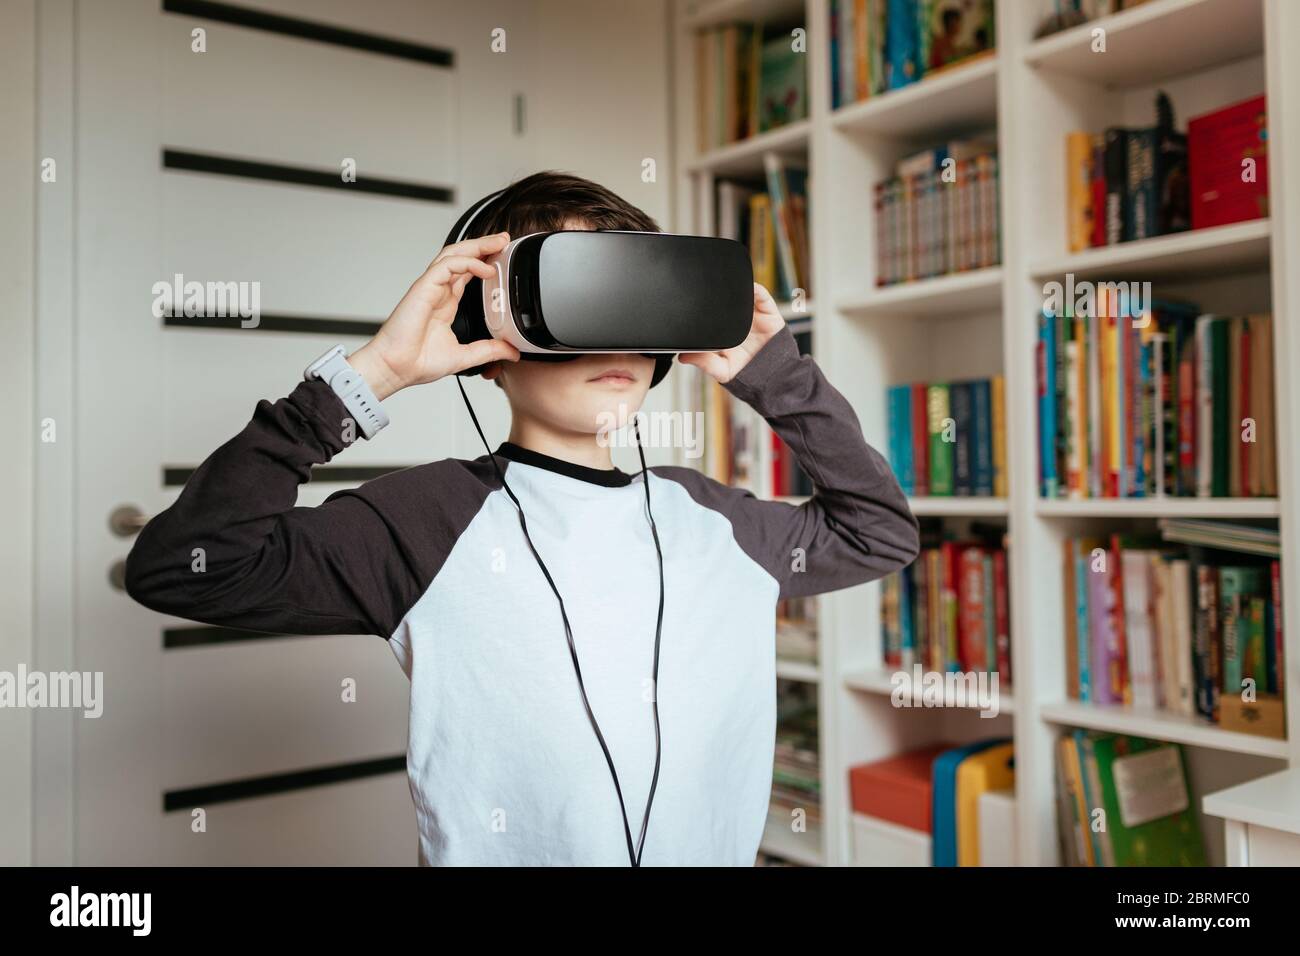 Ragazzo che indossa occhiali VR con cuffie. Un bambino adolescente che indossa e tocca cuffie per realtà virtuale. Foto Stock